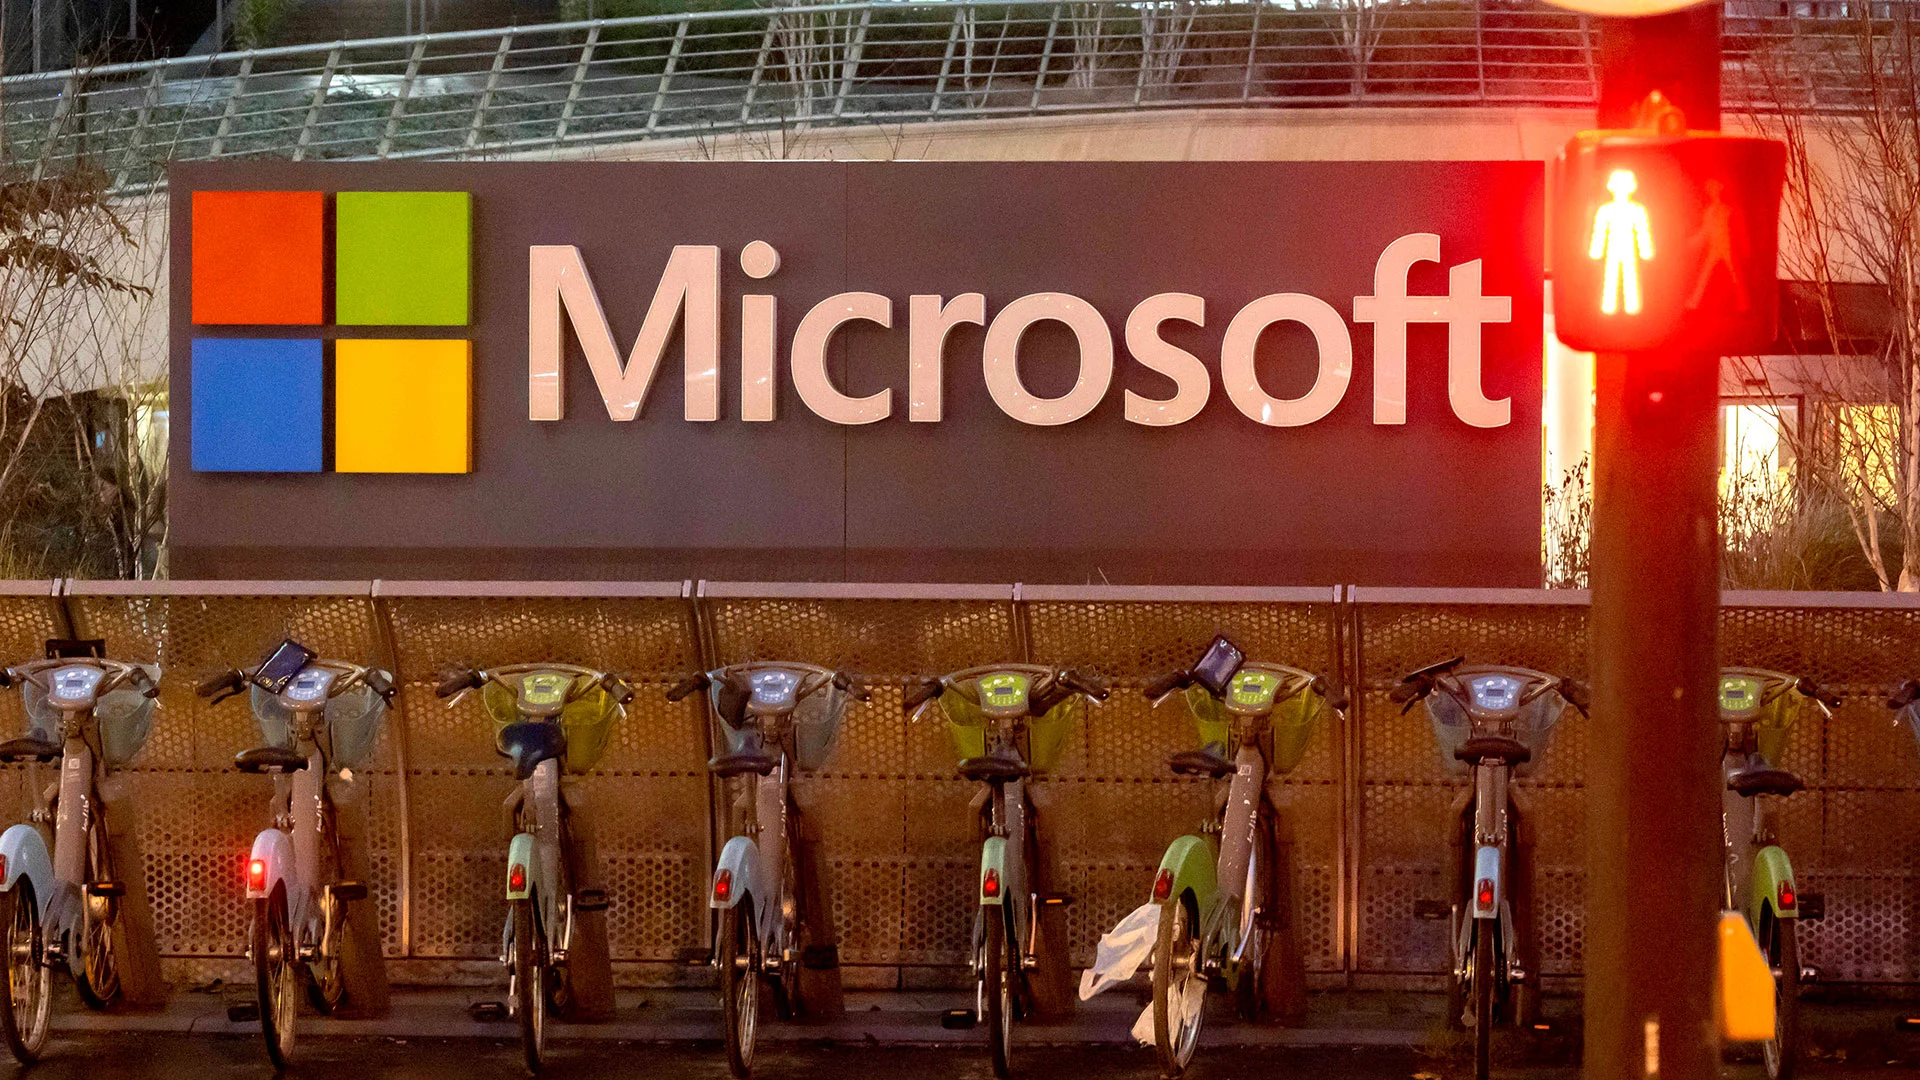 Schocknachricht für Microsoft&#8209;Aktie: Steuerbehörde fordert Milliarden (Foto: IP3press/IMAGO)